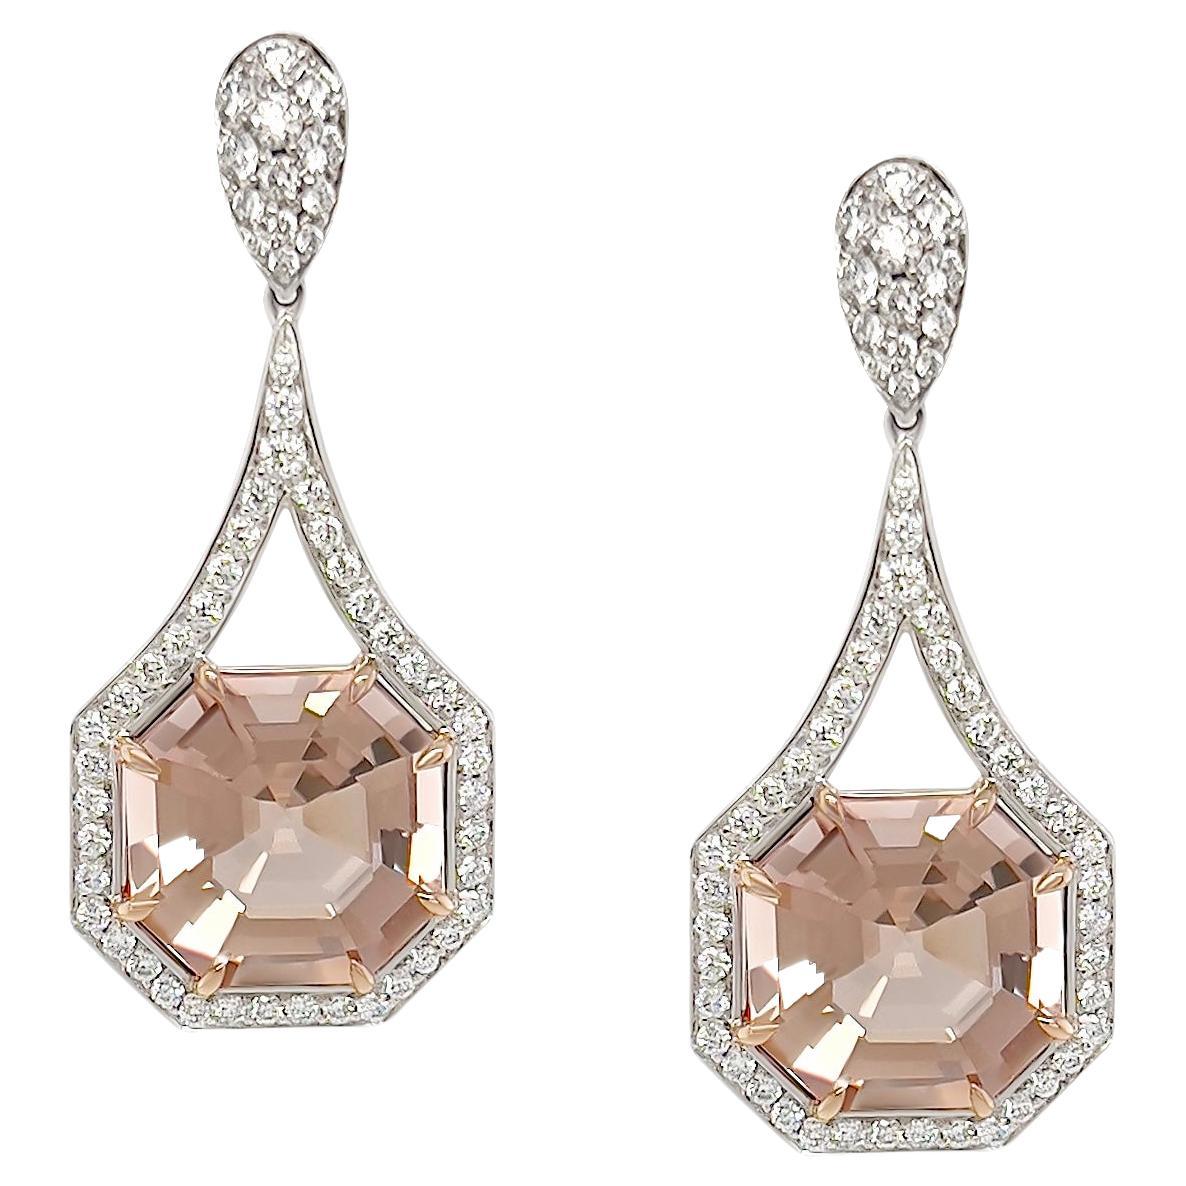 Pendants d'oreilles en Morganite champagne taille Ascher de 6,93 carats et diamants